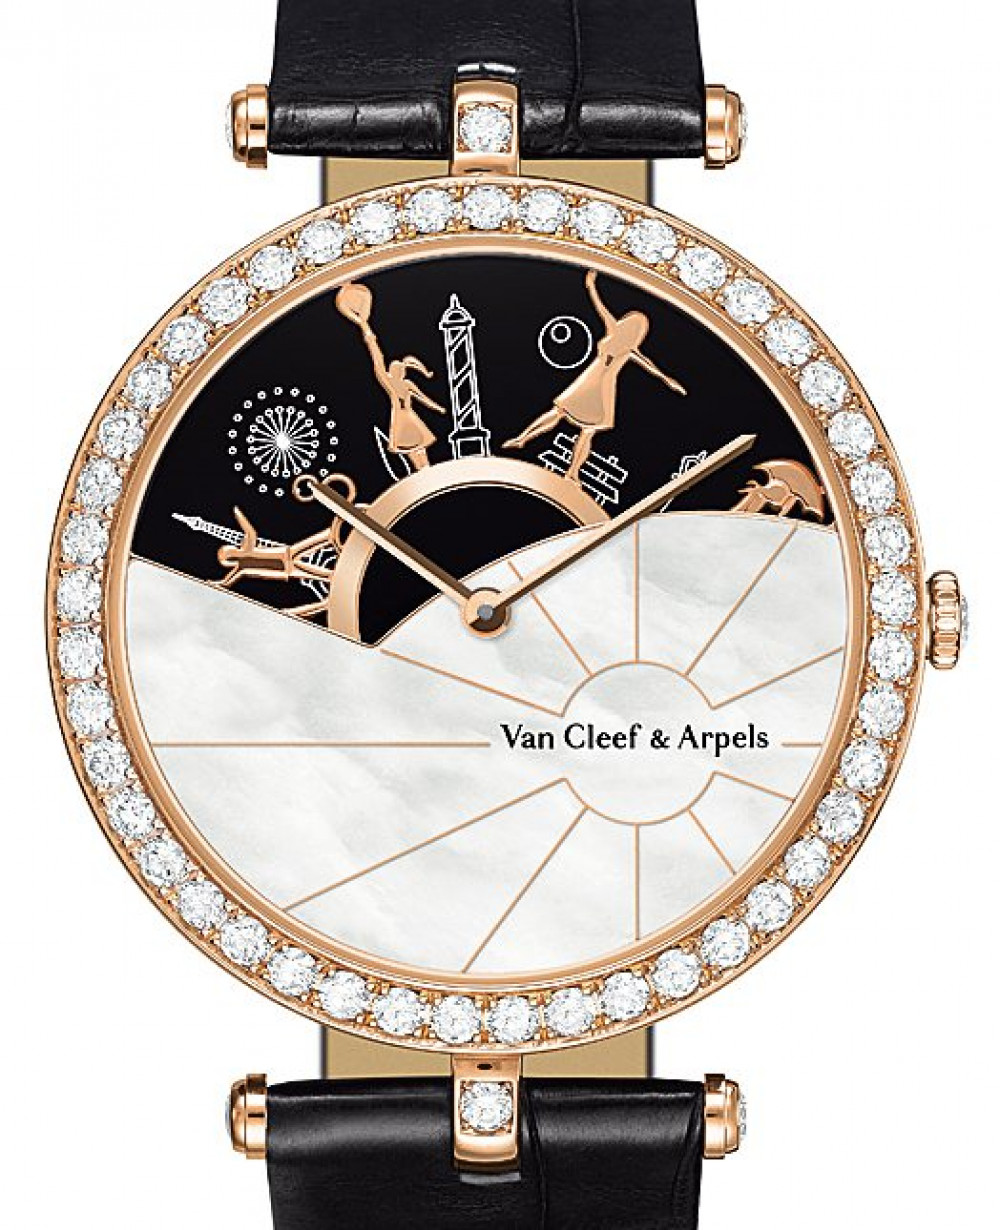 Zegarek firmy Van Cleef & Arpels, model Une Journèe à Paris